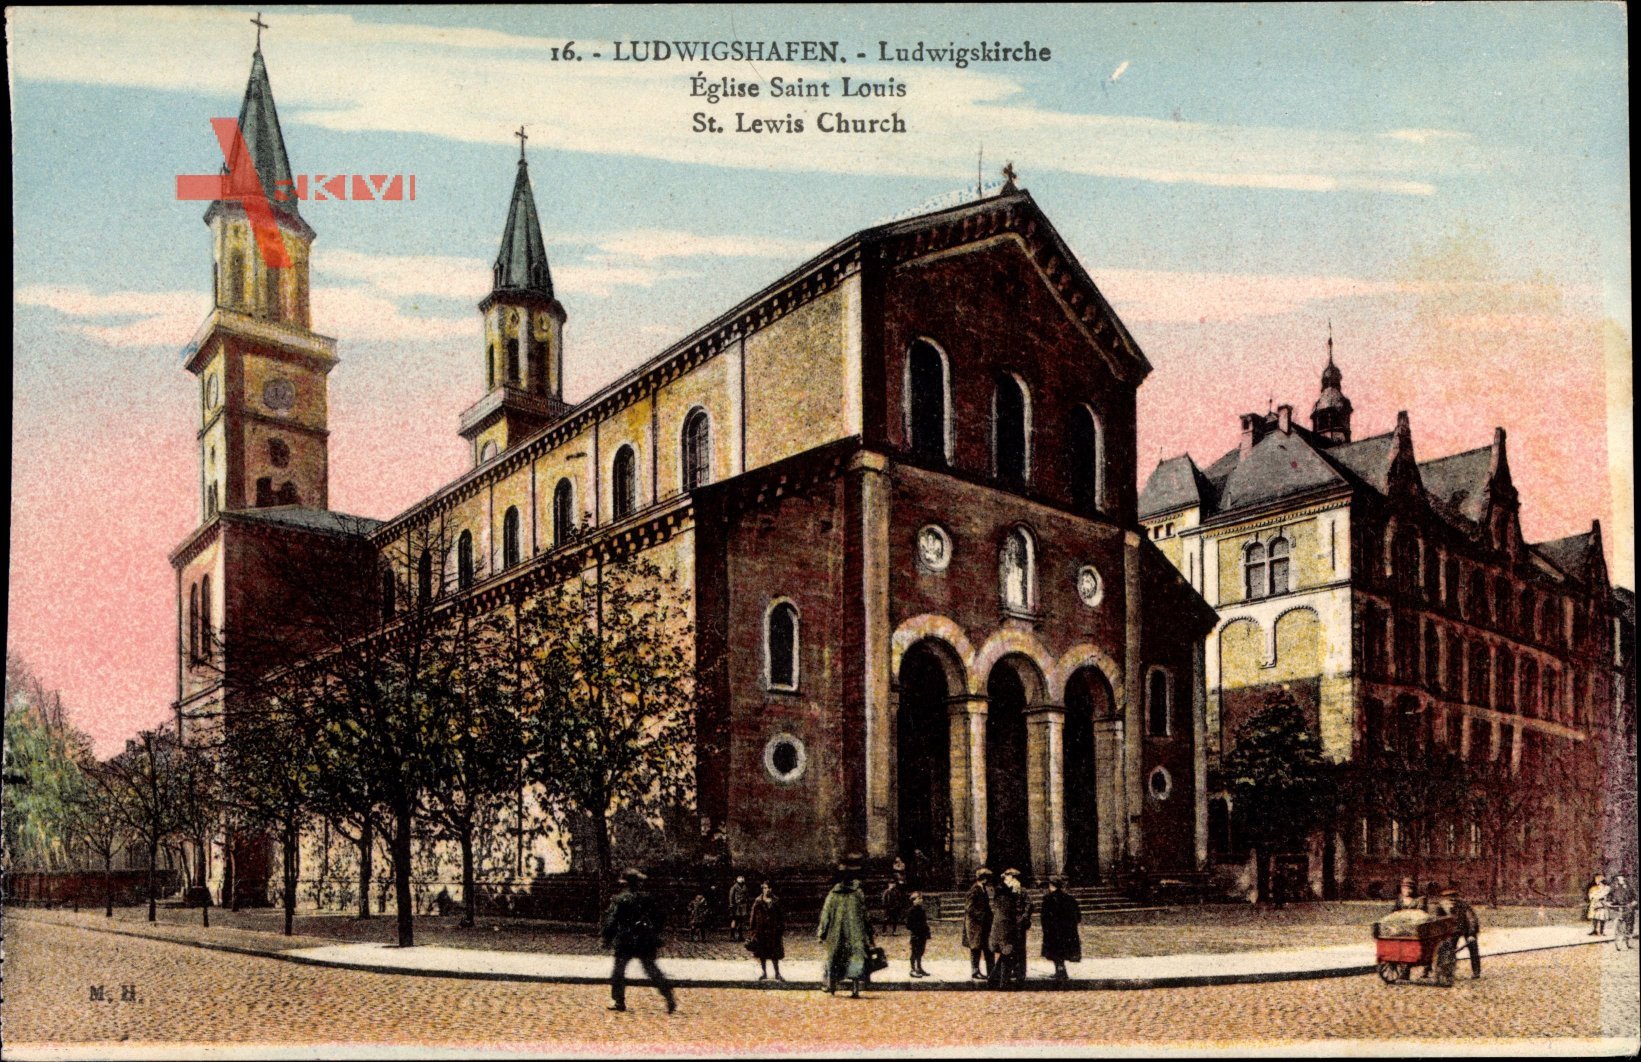 Ludwigshafen, Blick auf die Ludwigskirche, Passanten, Kopfsteinpflaster, Turm